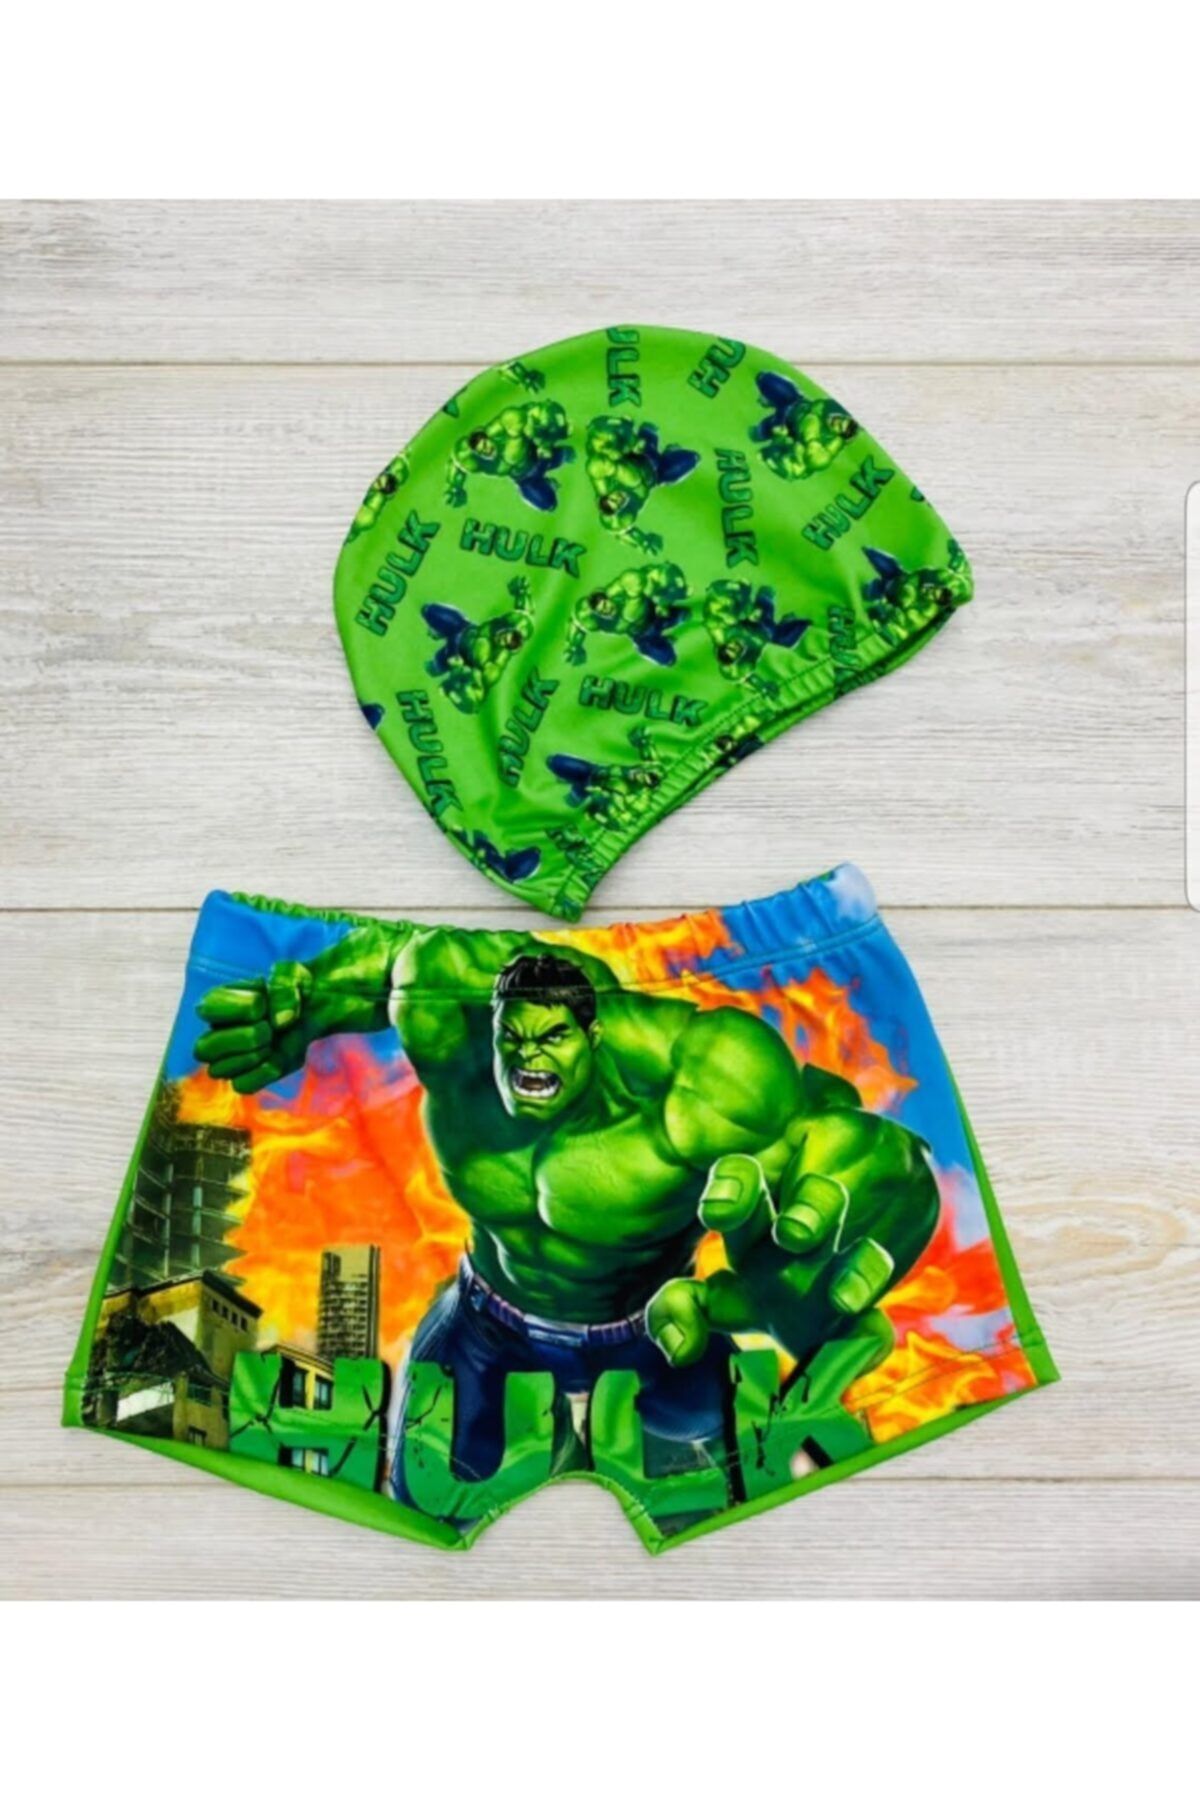 istefani kids Tarz Erkek Cocuk Hulk Figürlü Mayo Takımı